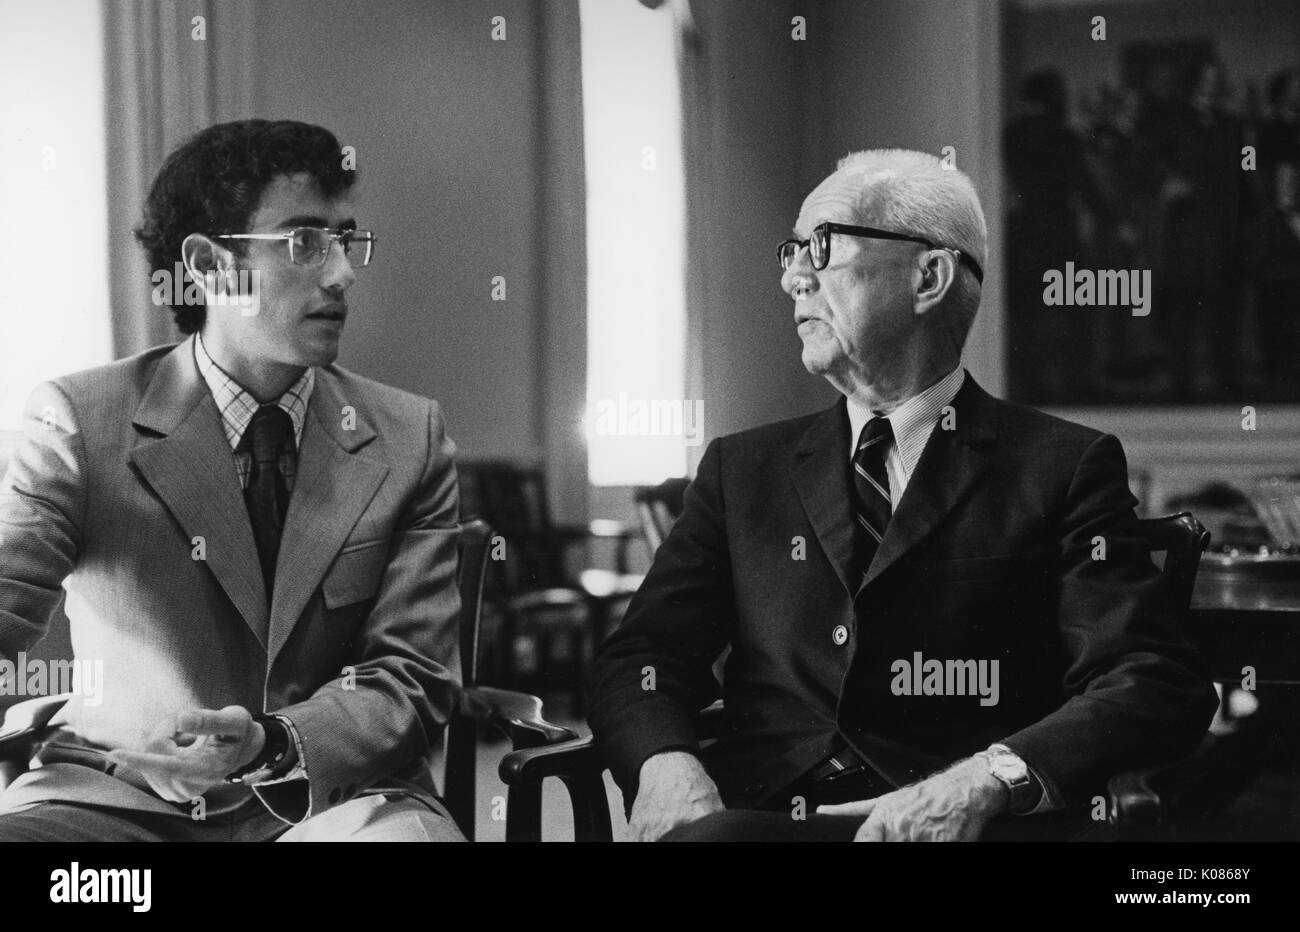 Brustbild des Architekten Buckminster Fuller spricht mit einem anderen Mann, voller trug einen dunklen Anzug mit weißem Hemd und eine gestreifte Krawatte, Brillen, in einem hölzernen Stuhl sitzt und mit Blick auf den anderen Mann, 1970. Stockfoto